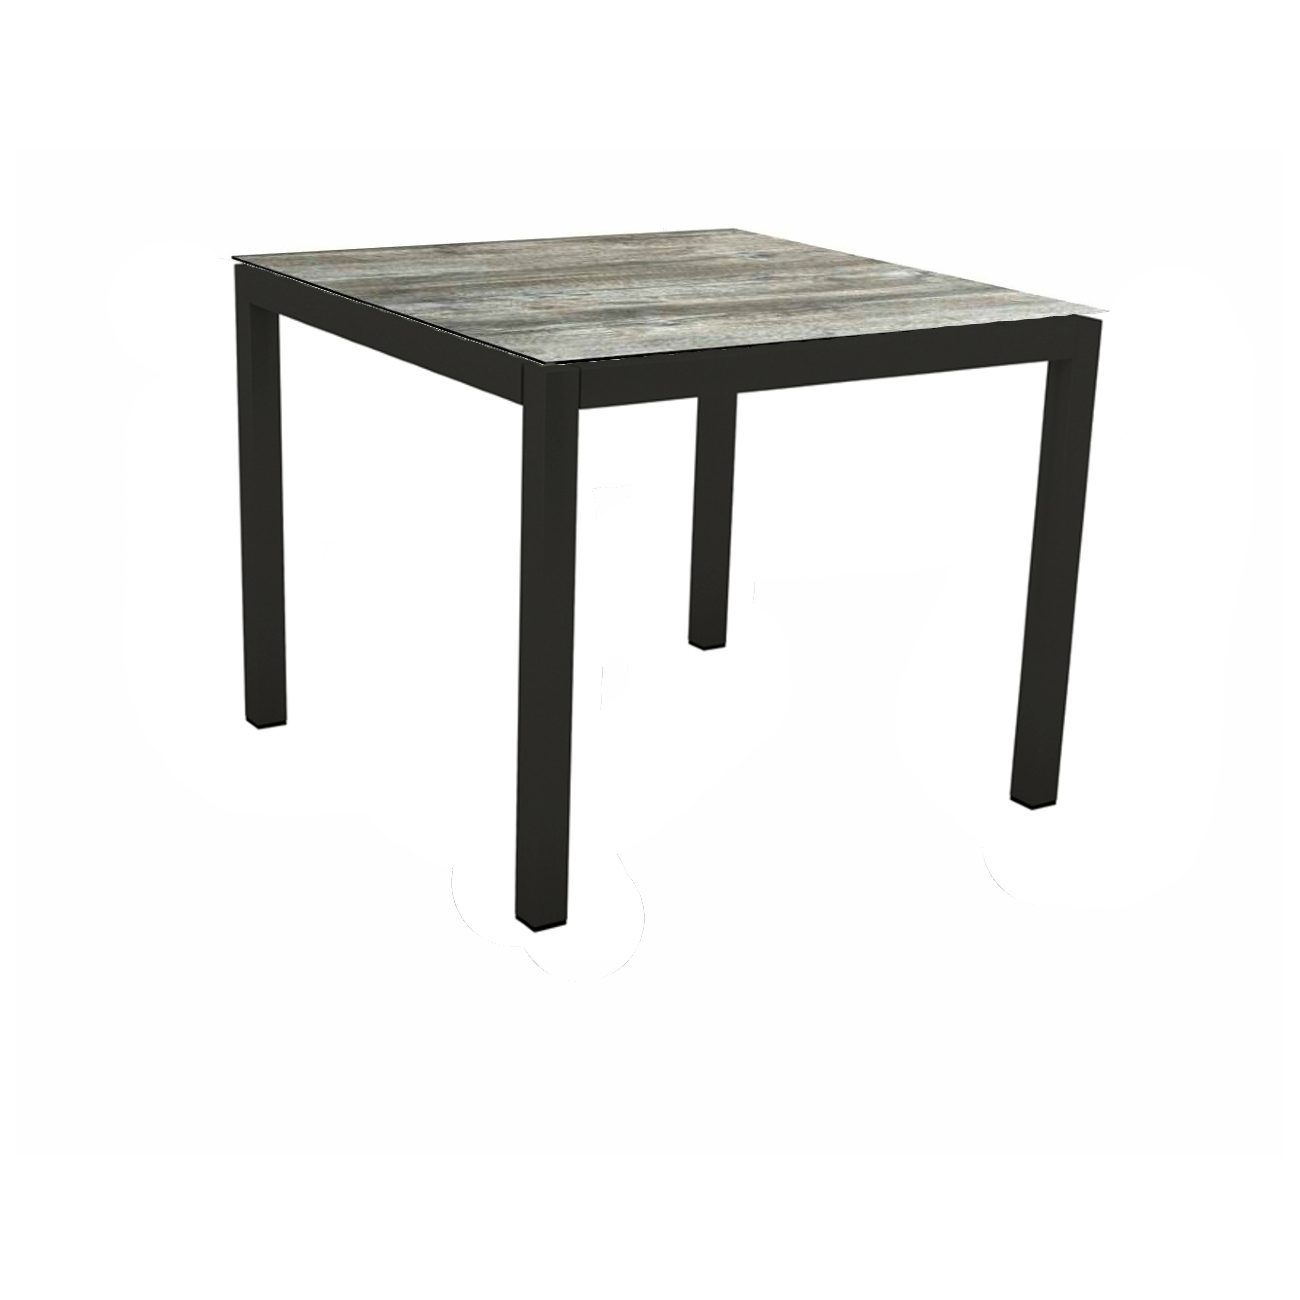 Stern Gartentisch, Gestell Aluminium schwarz matt, Tischplatte HPL Tundra Grau, 90x90 cm